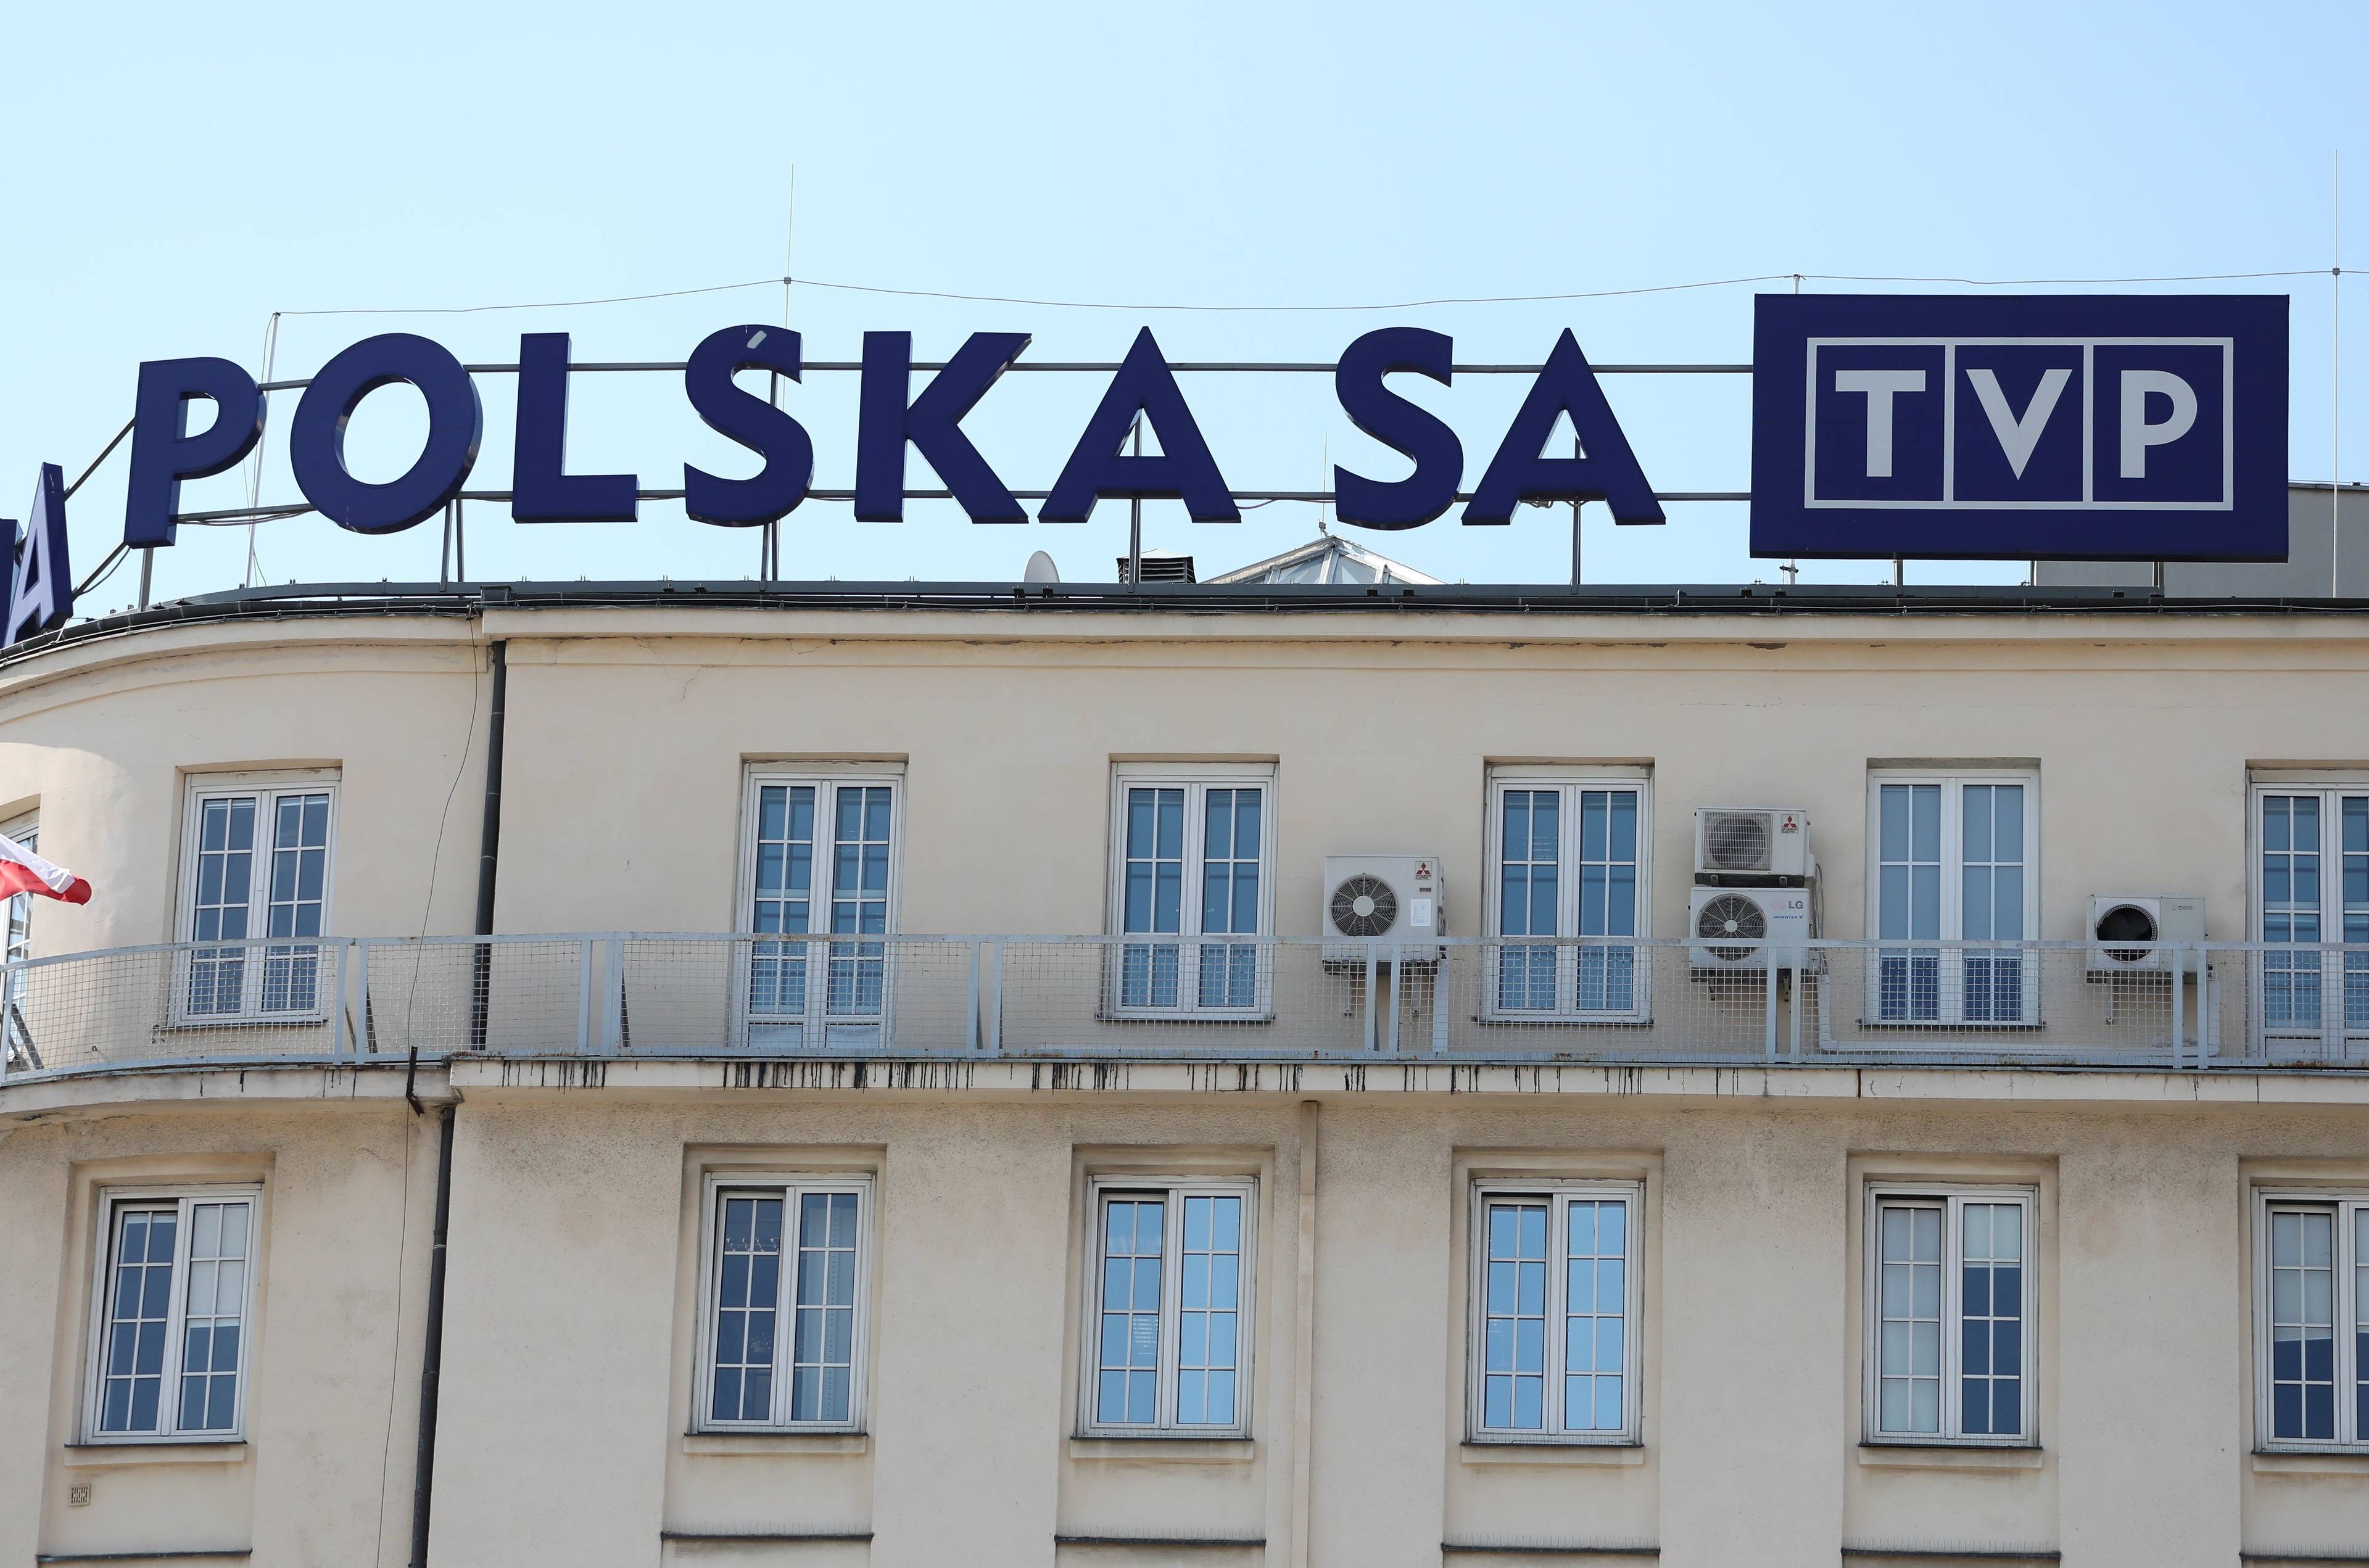 Napis "Polska SA" (fragment większej całości i logo TVP na budynku